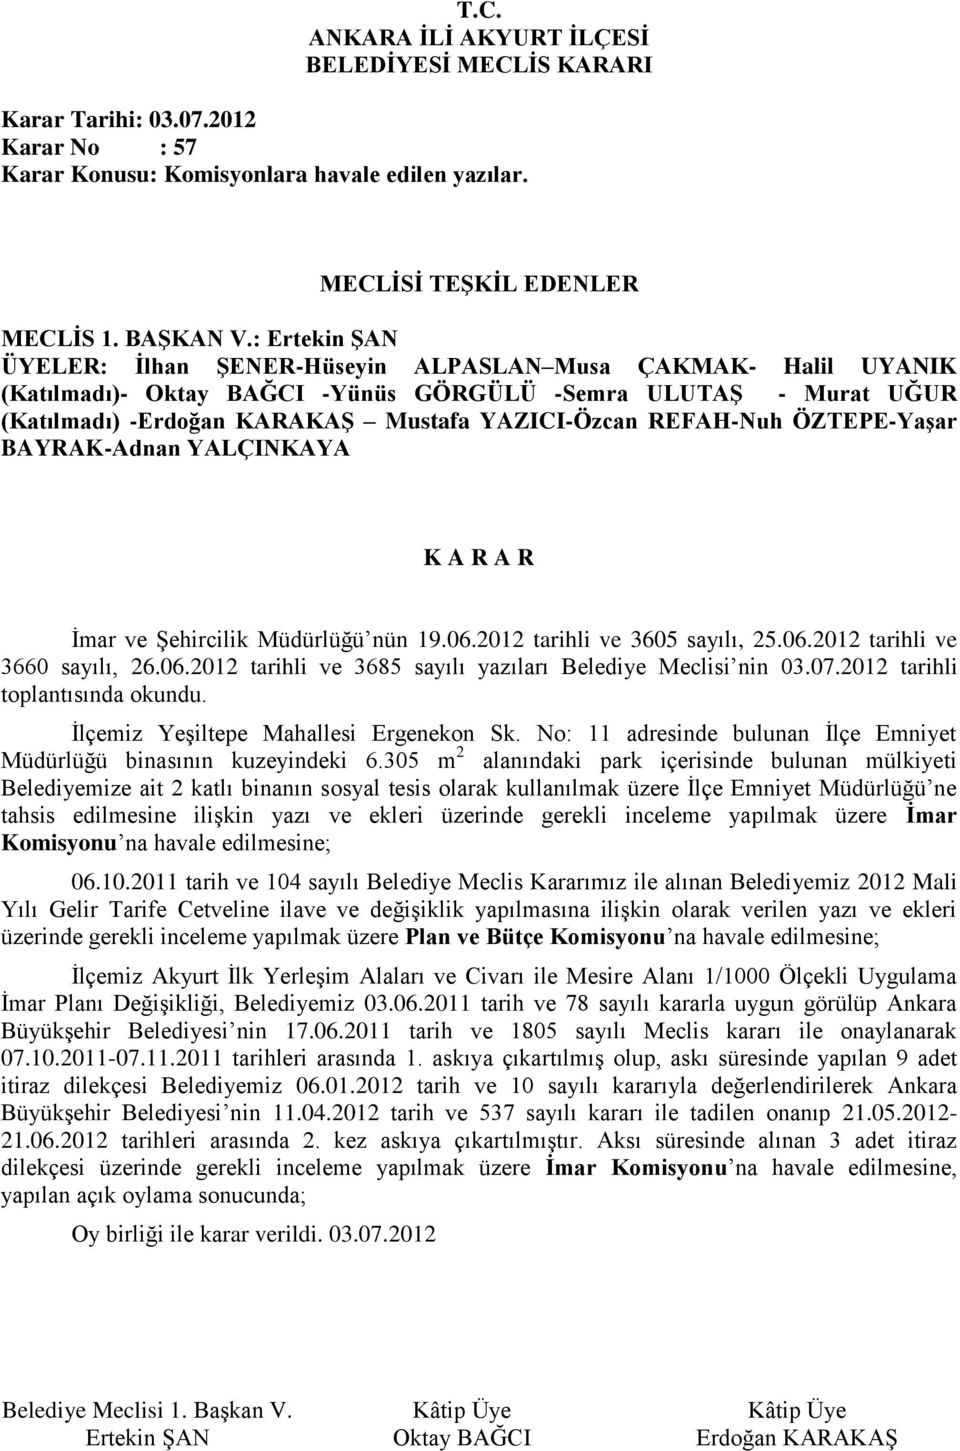 REFAH-Nuh ÖZTEPE-Yaşar BAYRAK-Adnan İmar ve Şehircilik Müdürlüğü nün 19.06.2012 tarihli ve 3605 sayılı, 25.06.2012 tarihli ve 3660 sayılı, 26.06.2012 tarihli ve 3685 sayılı yazıları Belediye Meclisi nin 03.